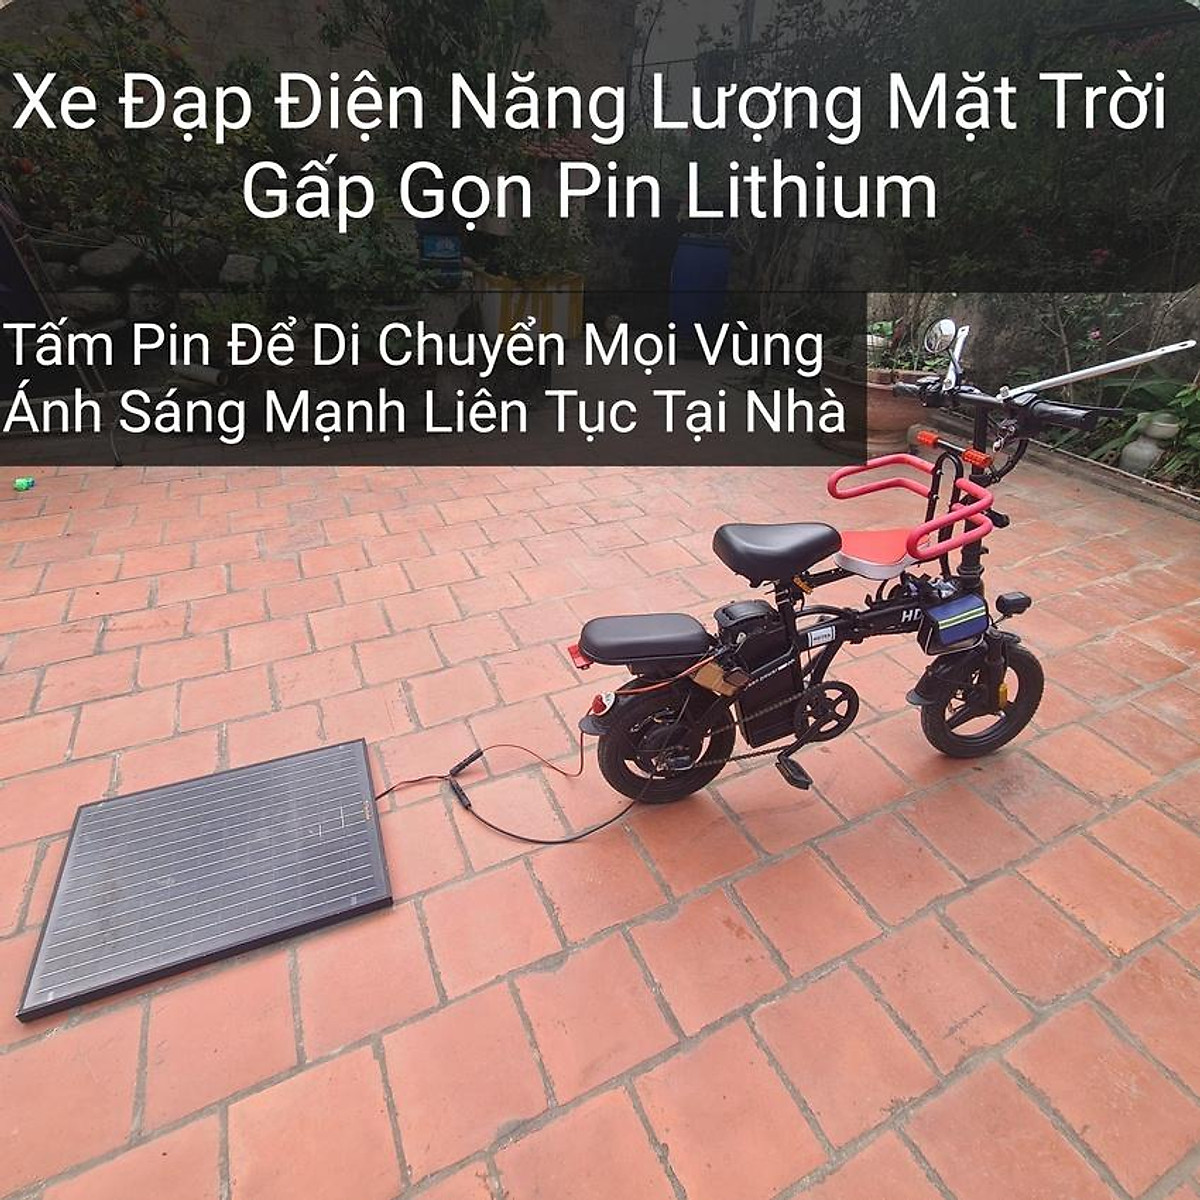 Xe Đạp Xe đạp điện Kim Tú  Xe Đạp Điện Tp HCM